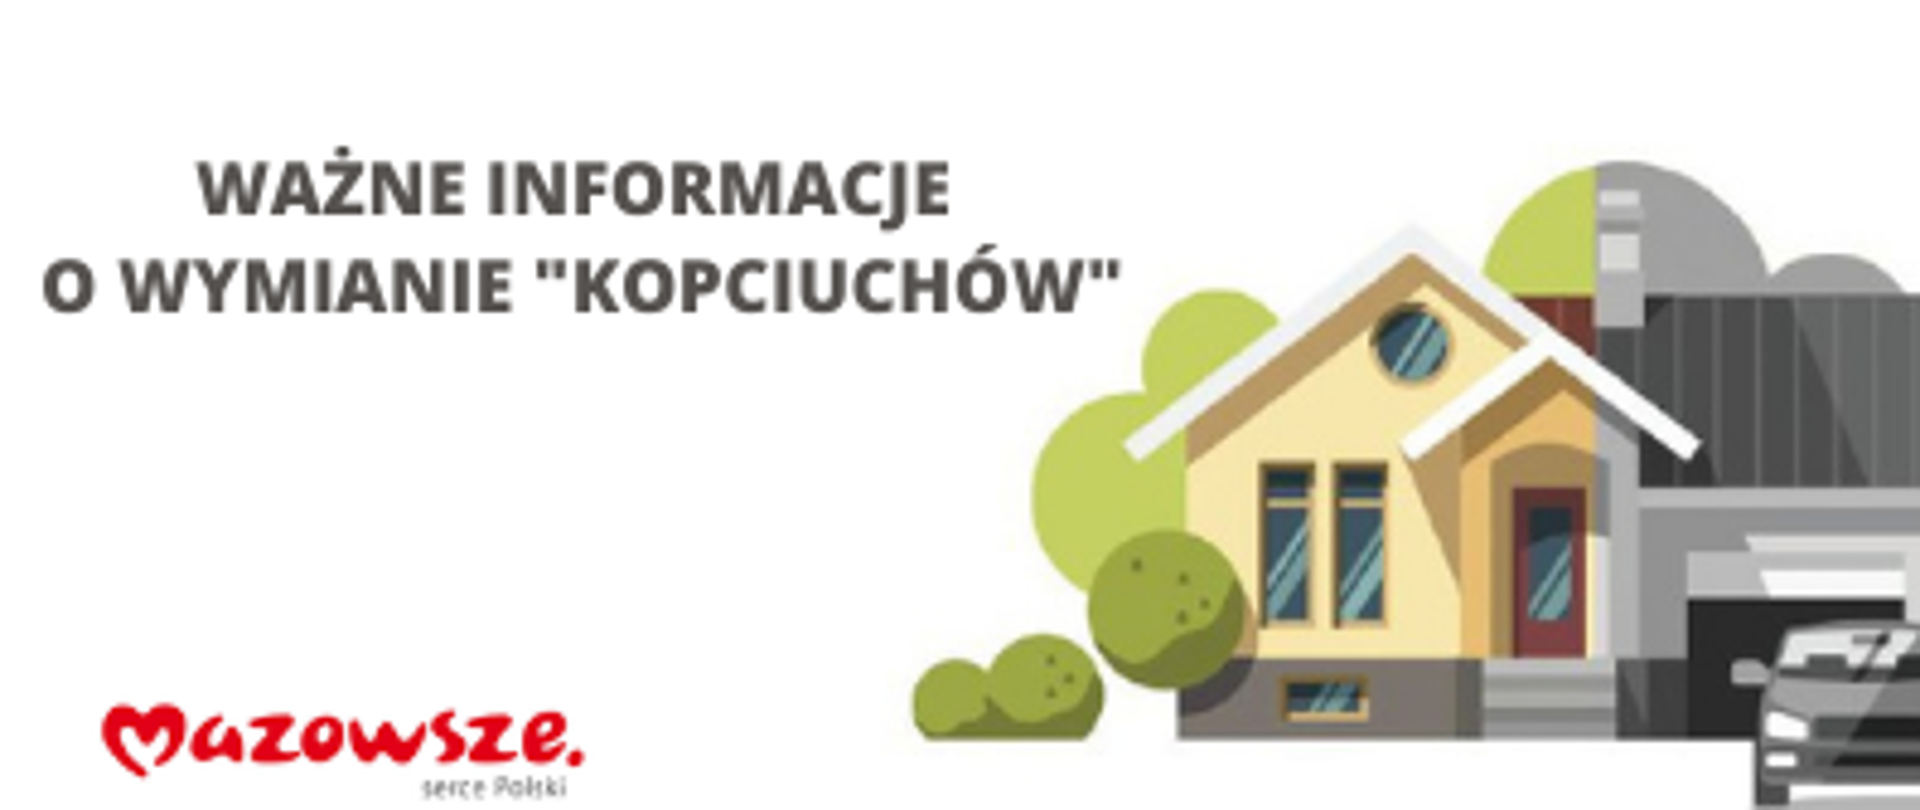 Tekst: "Ważne informacje o wymianie "kopciuchów", poniżej logo Mazowsze, po prawej stronie znajduje się rysunek domu przed którym stoi samochód.